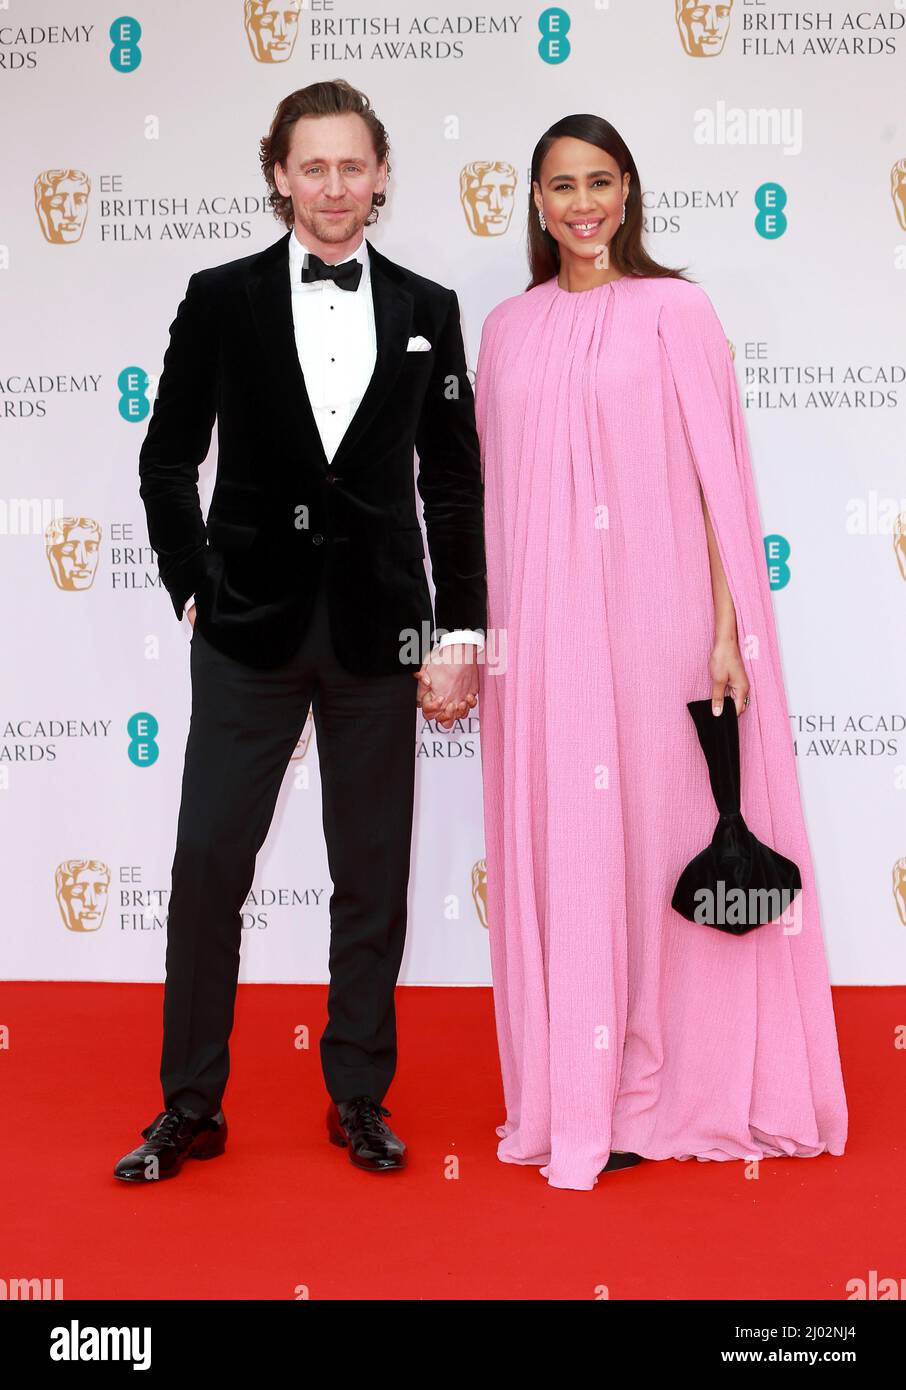 Tom Hiddleston e Zawe Ashton partecipano agli EE British Academy Film Awards 2022 presso la Royal Albert Hall il 13 marzo 2022 a Londra, Inghilterra. Foto Stock